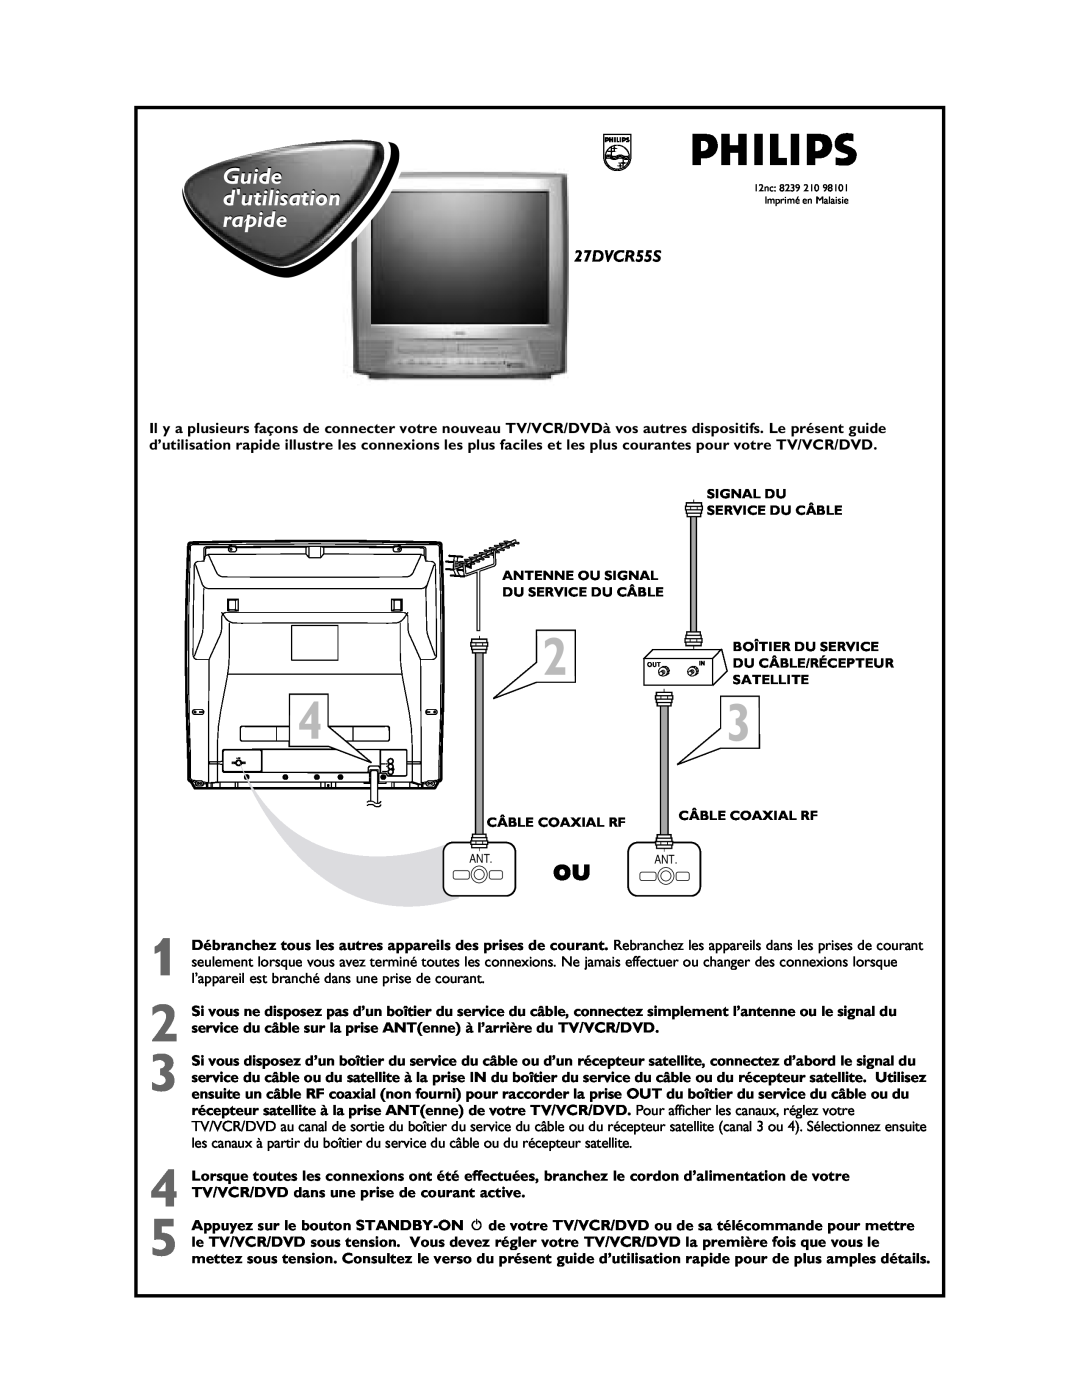 Philips 27DVCR55S manual Guide dutilisation rapide 